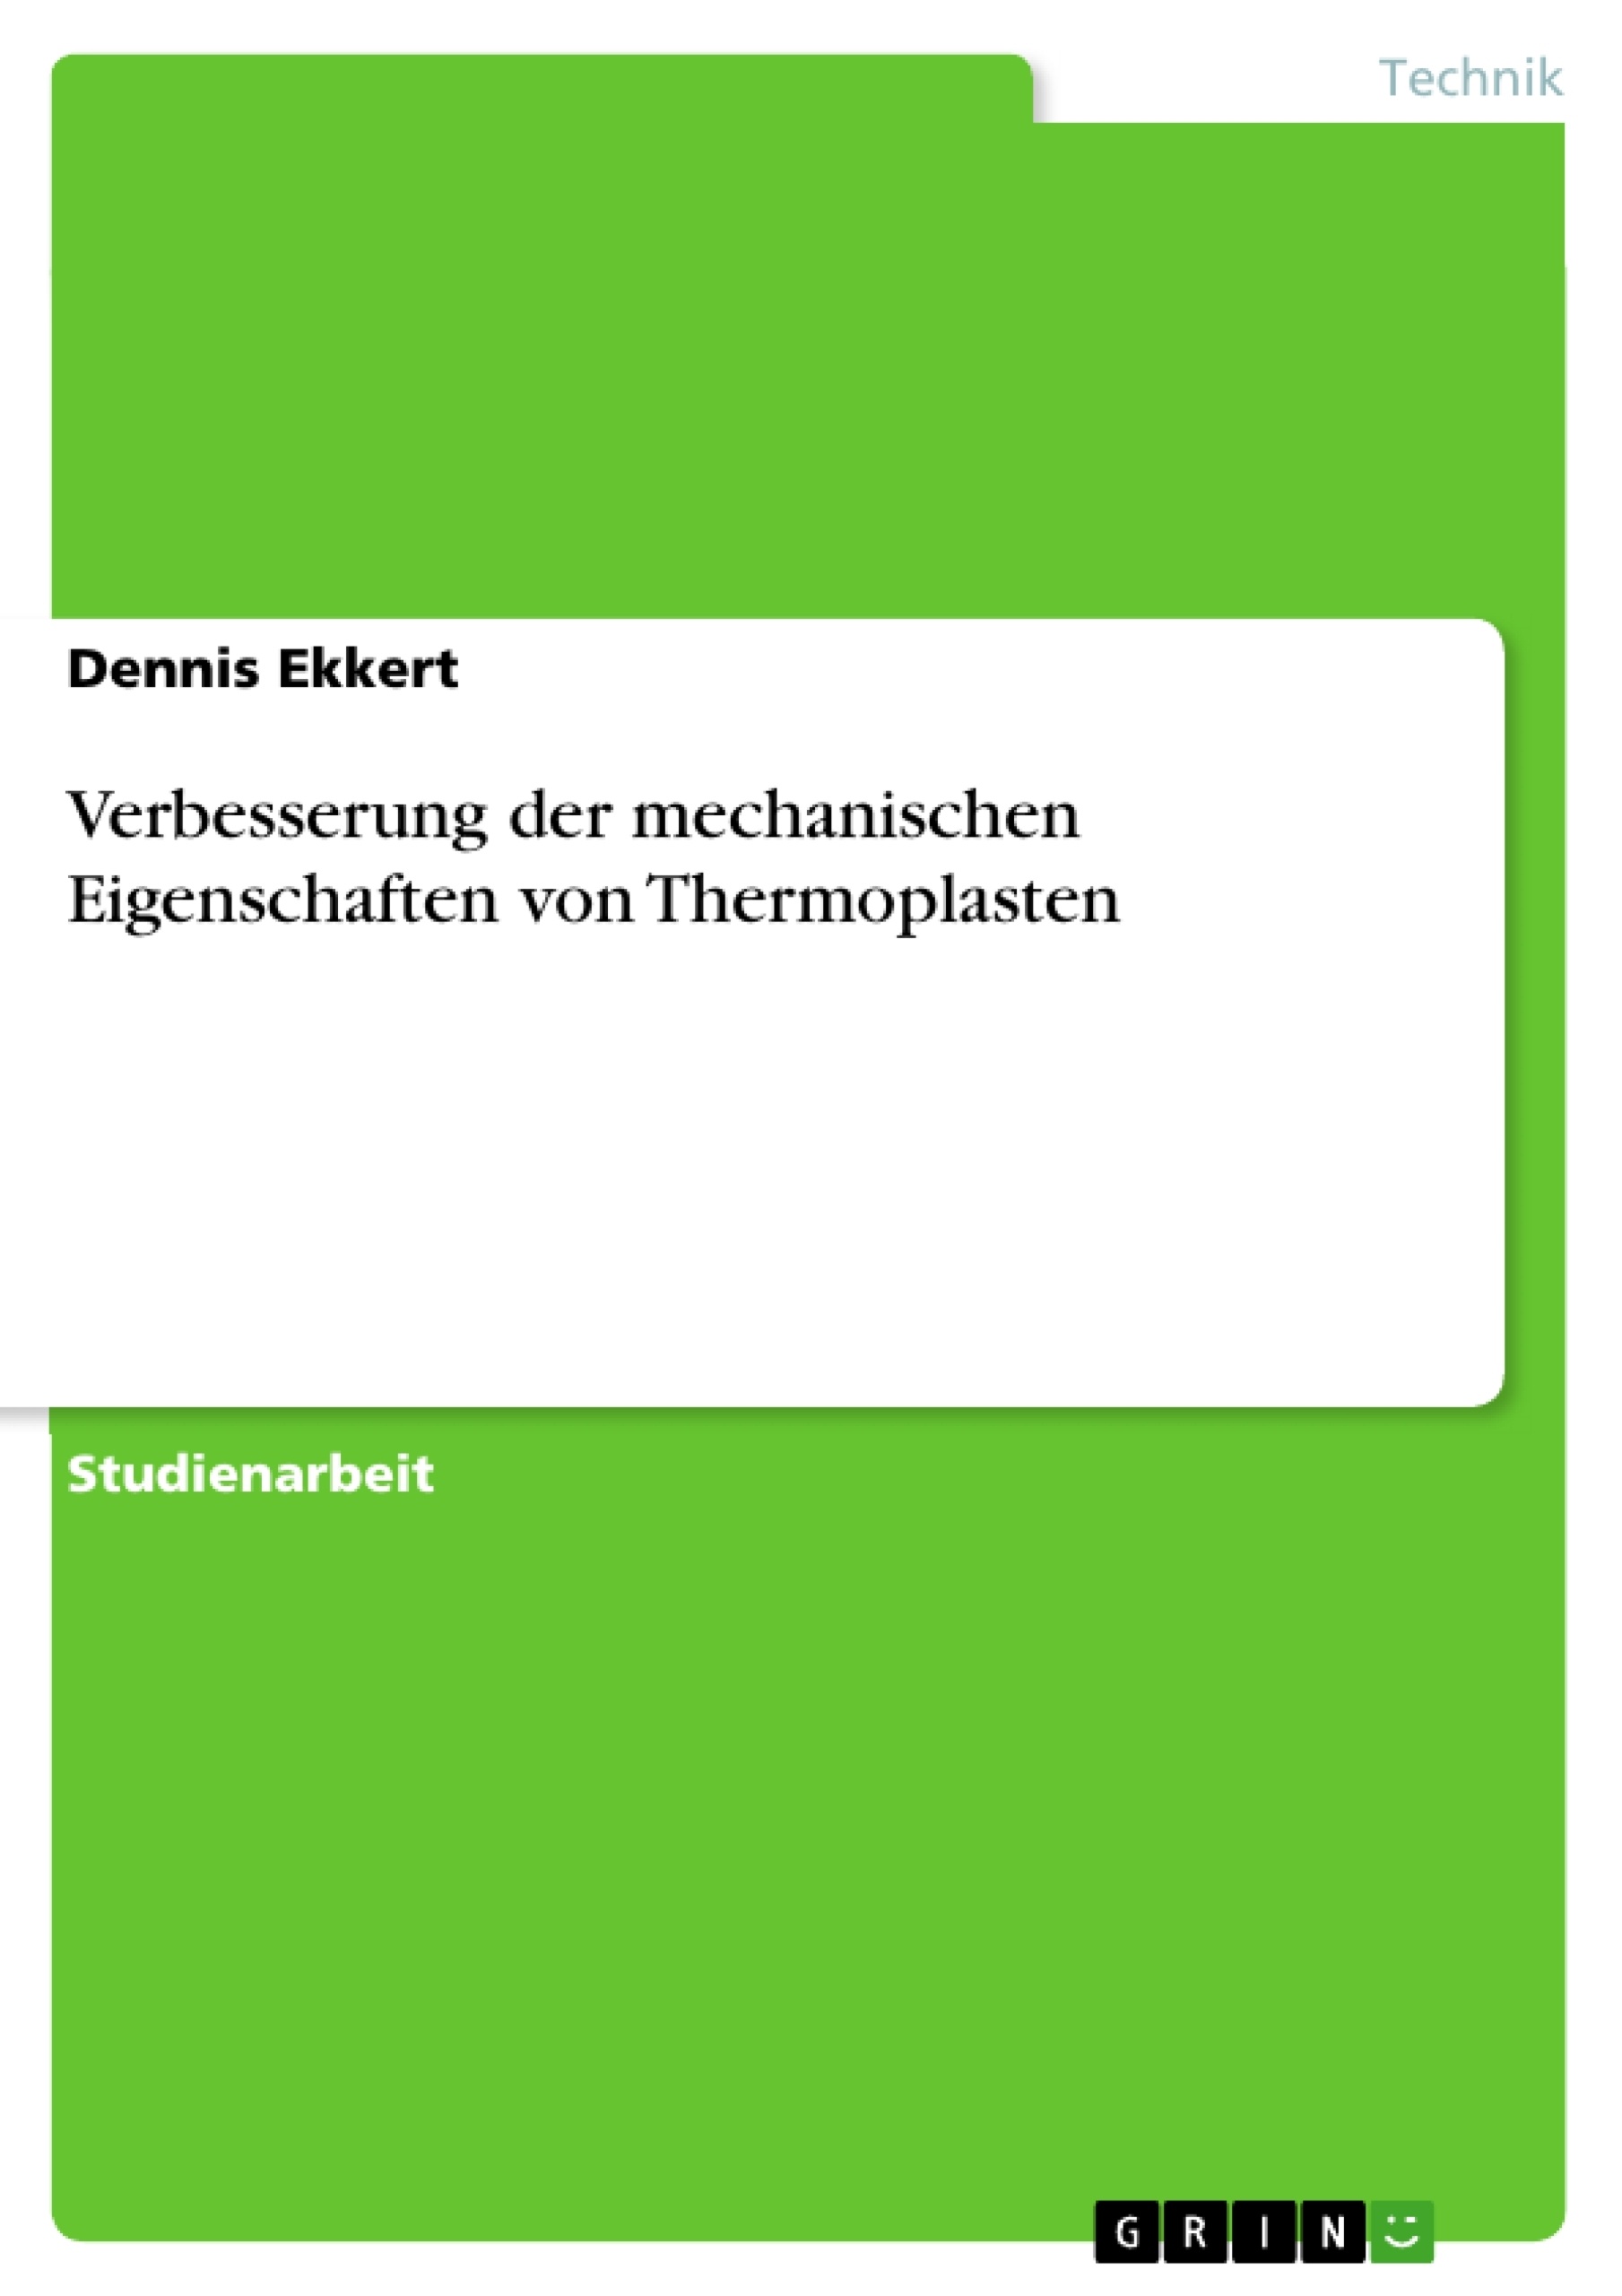 Title: Verbesserung der mechanischen Eigenschaften von Thermoplasten